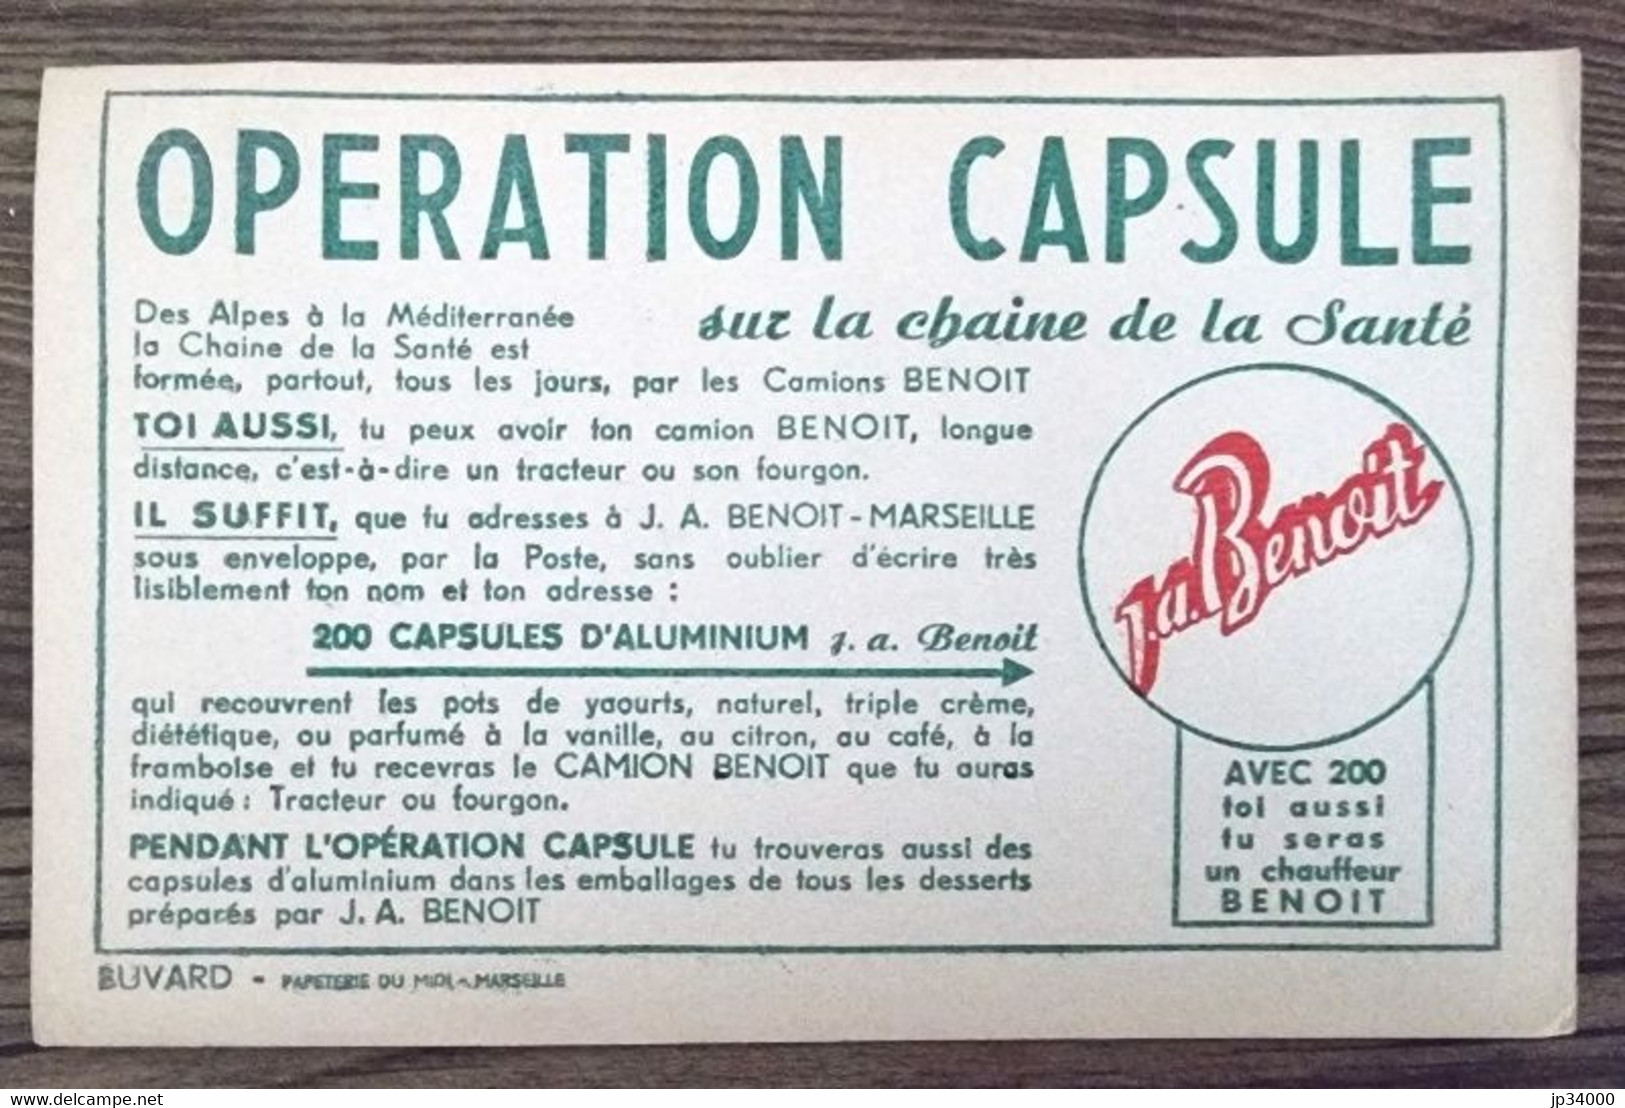 BUVARD: J. A. BENOIT Marseille Yaourts Et Desserts Opération Capsule Camion (20.8 X 13.2 ) - Produits Laitiers